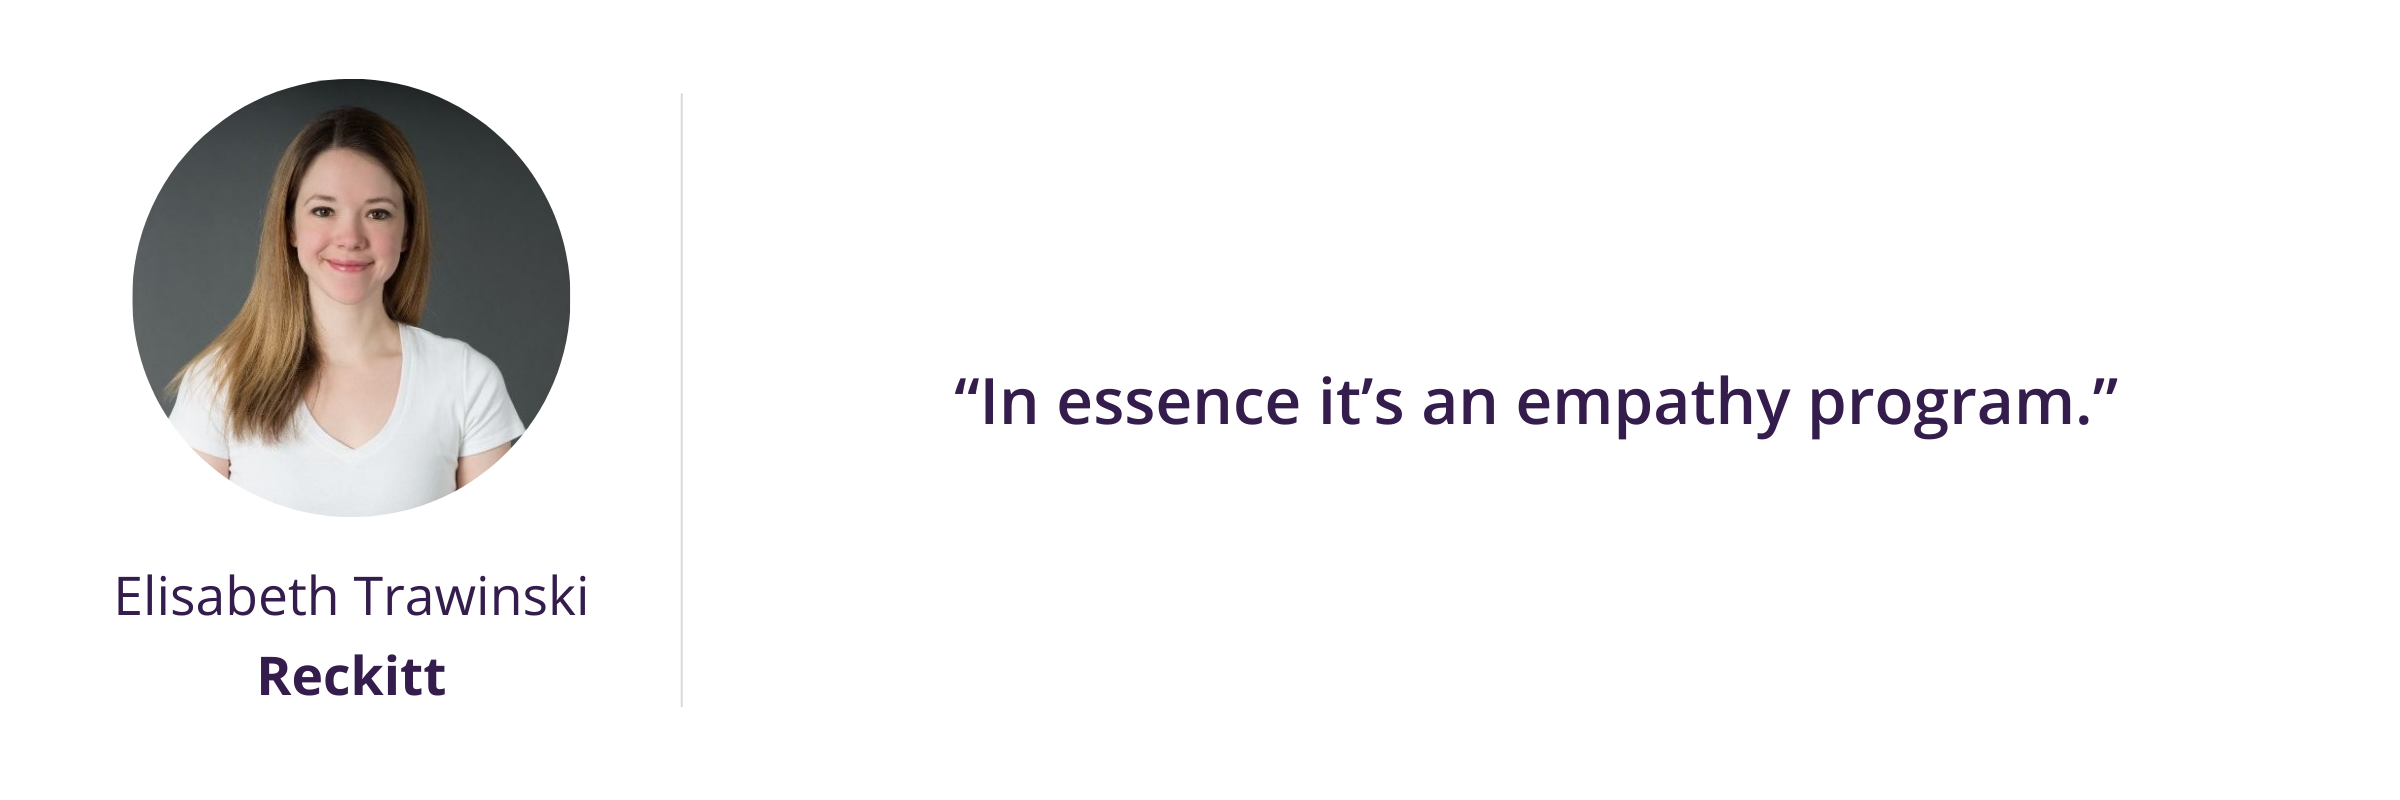 “In essence it’s an empathy program.”